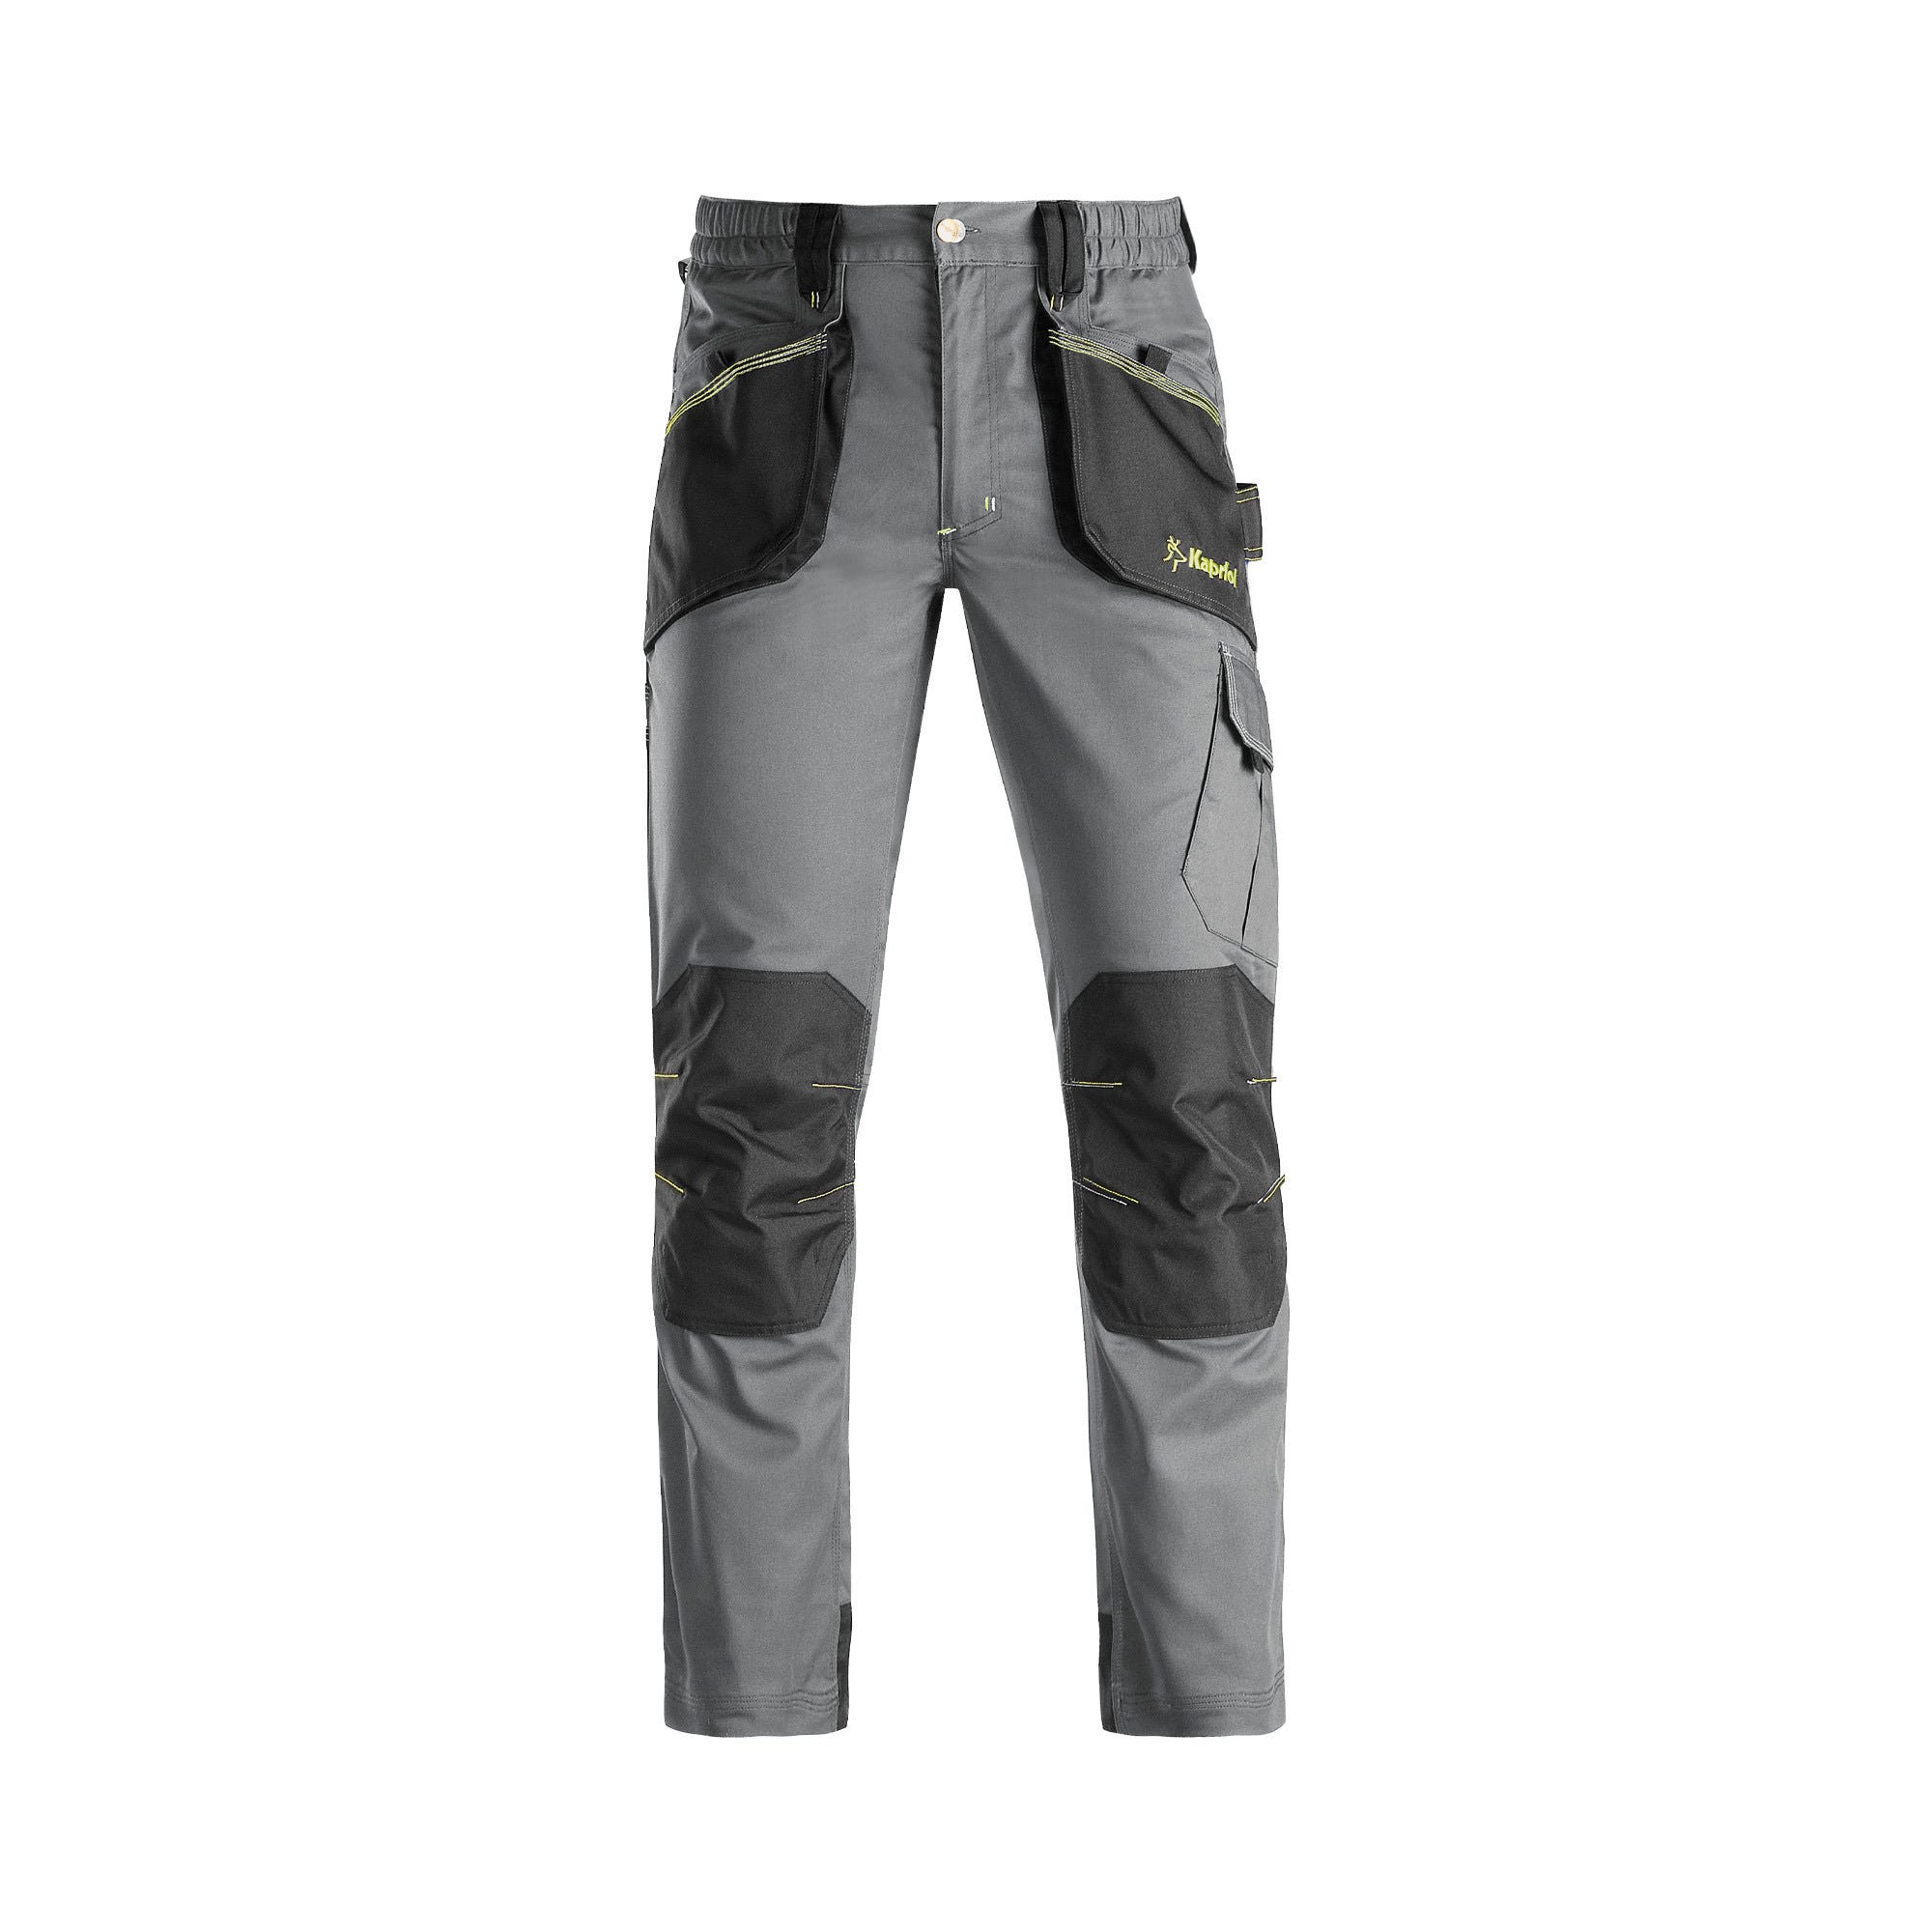 Pantalon de travail gris/noir T.L SPOT - KAPRIOL 0